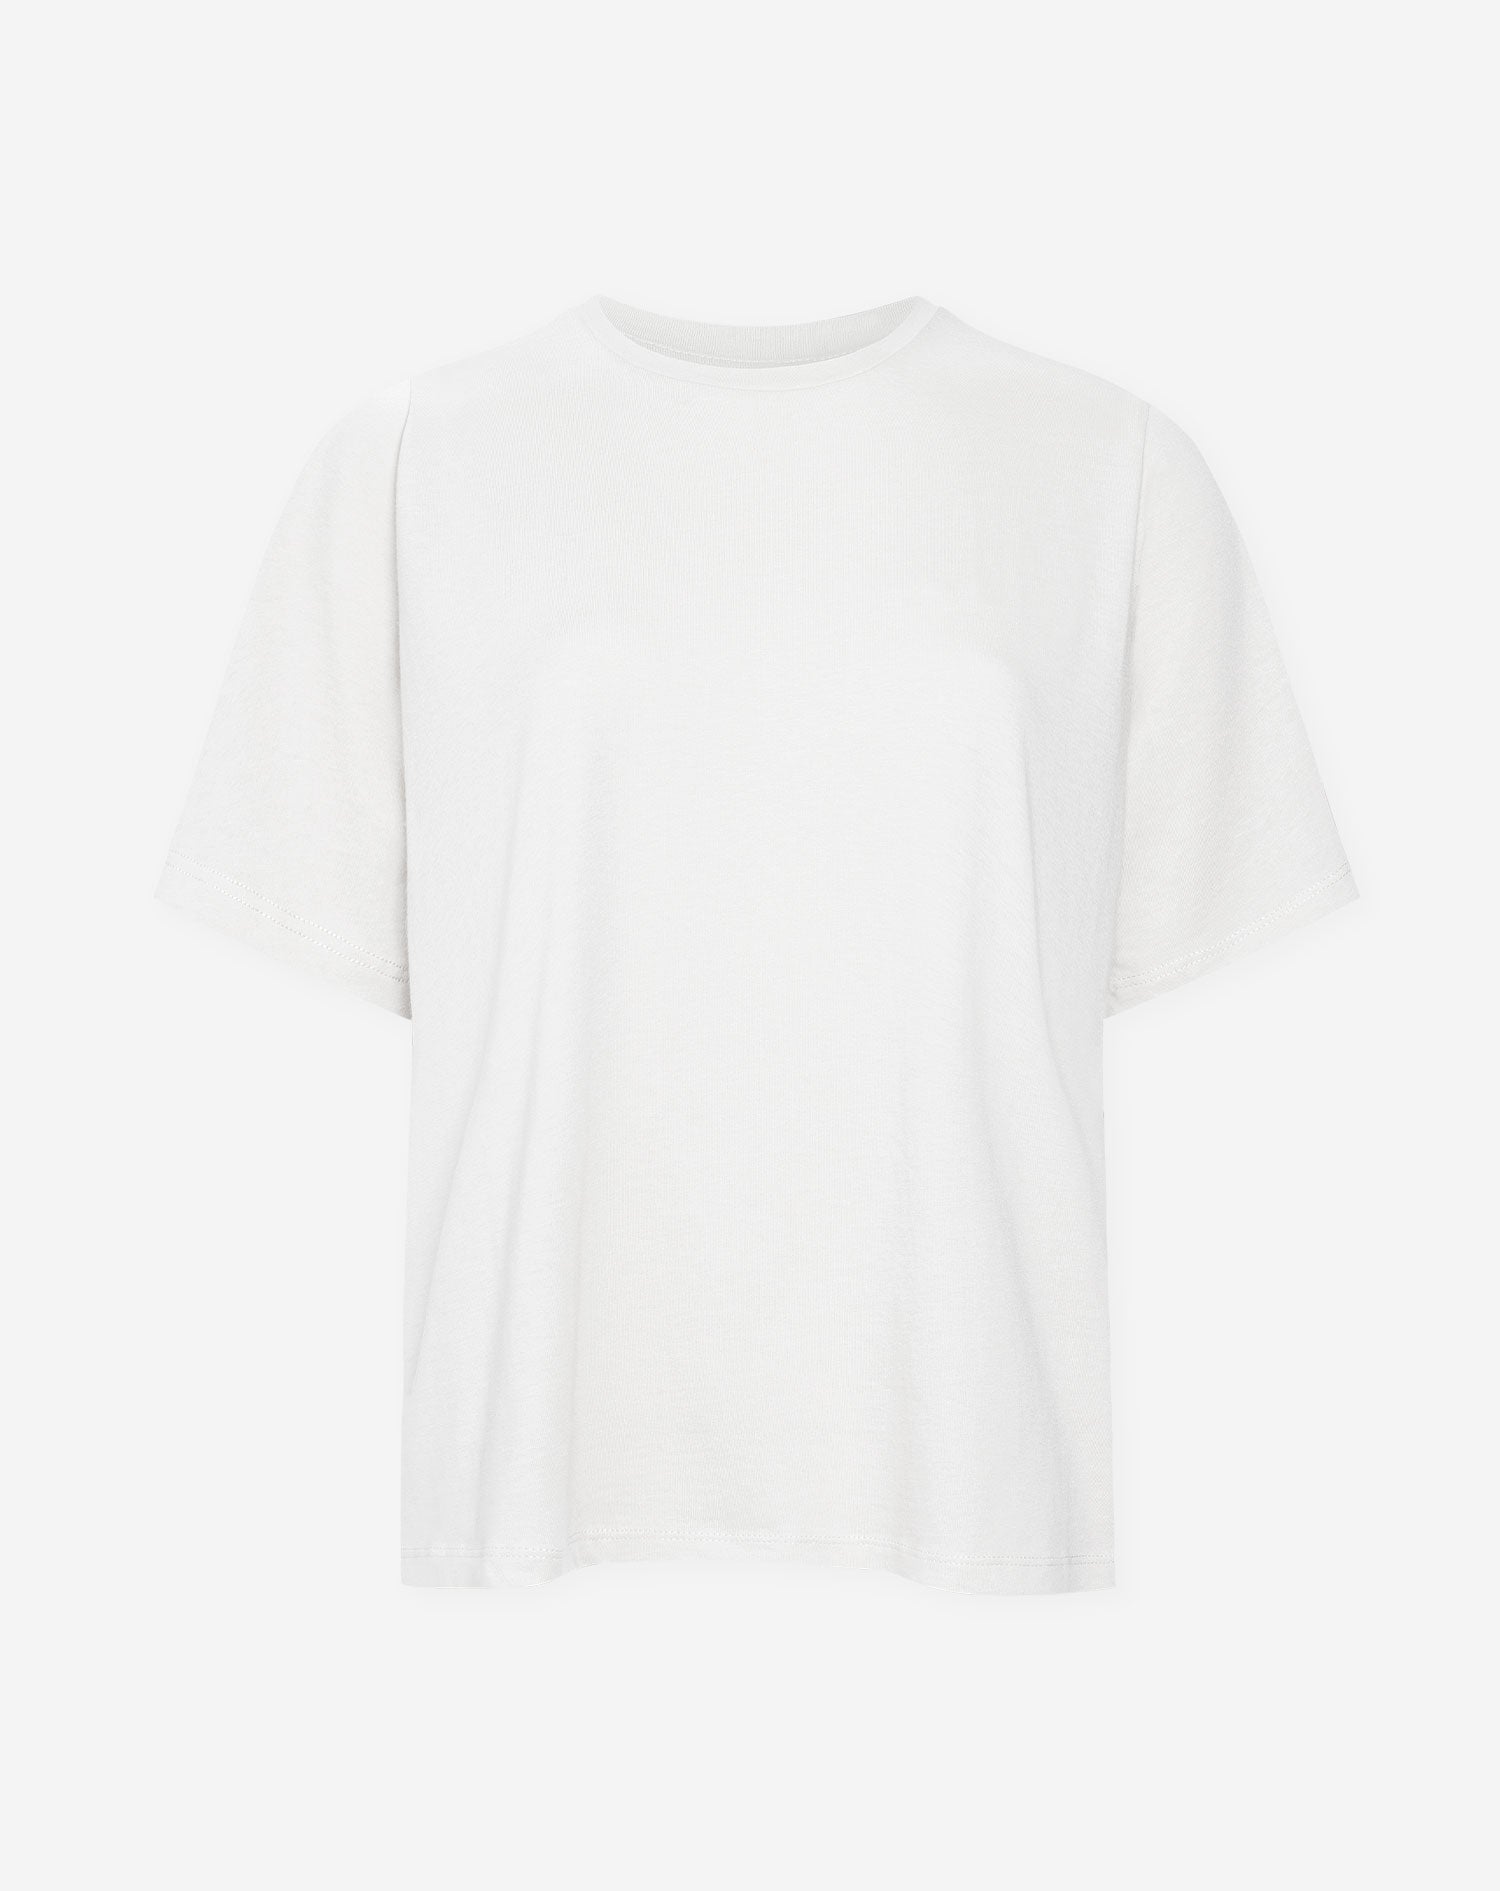 BASIC-OVERSIZE-T-Shirt WEISS